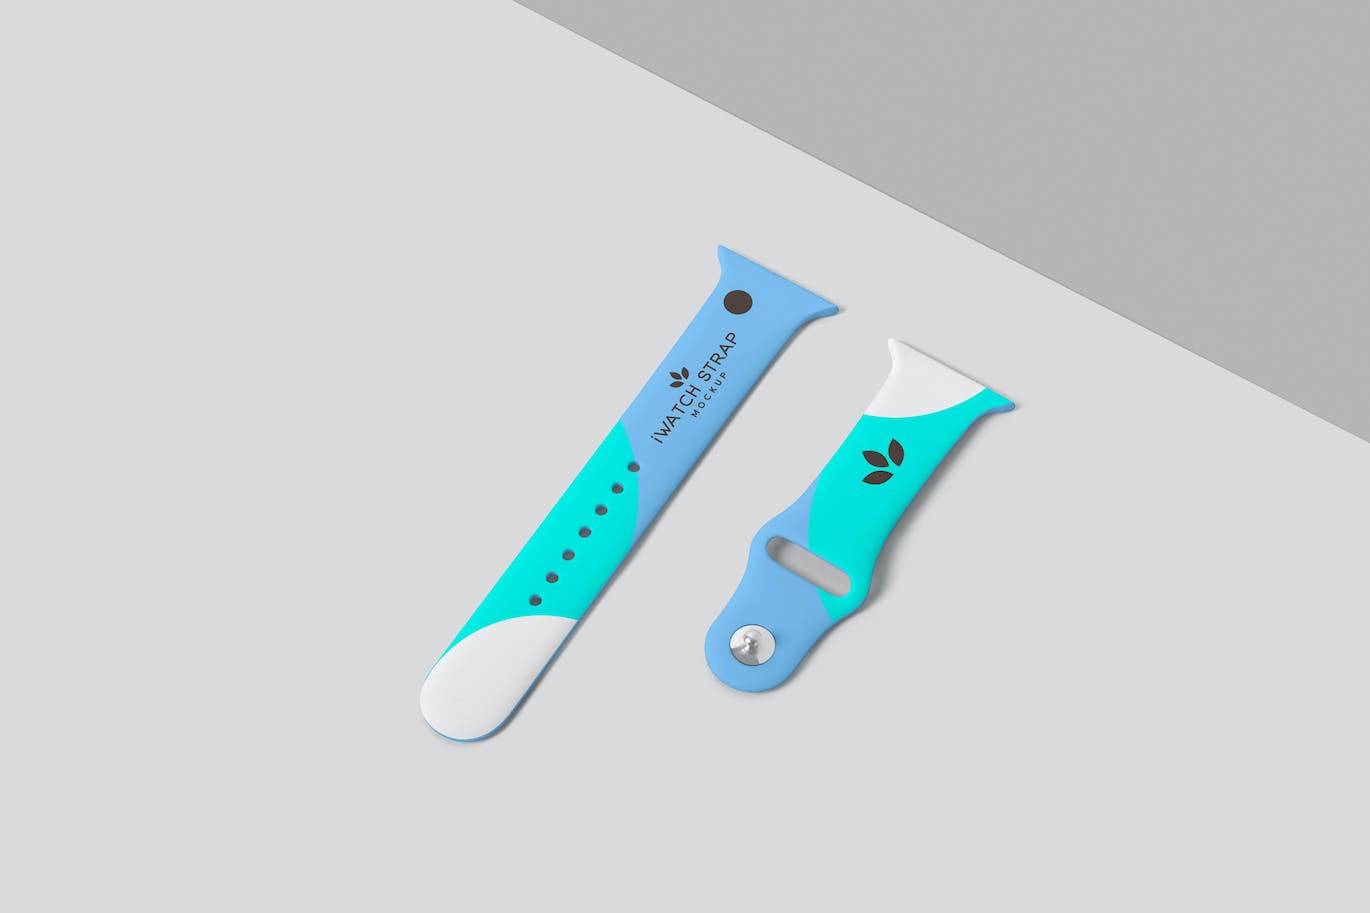 iWatch橡胶表带品牌设计样机 iWatch Rubber Strap Mockups 样机素材 第1张